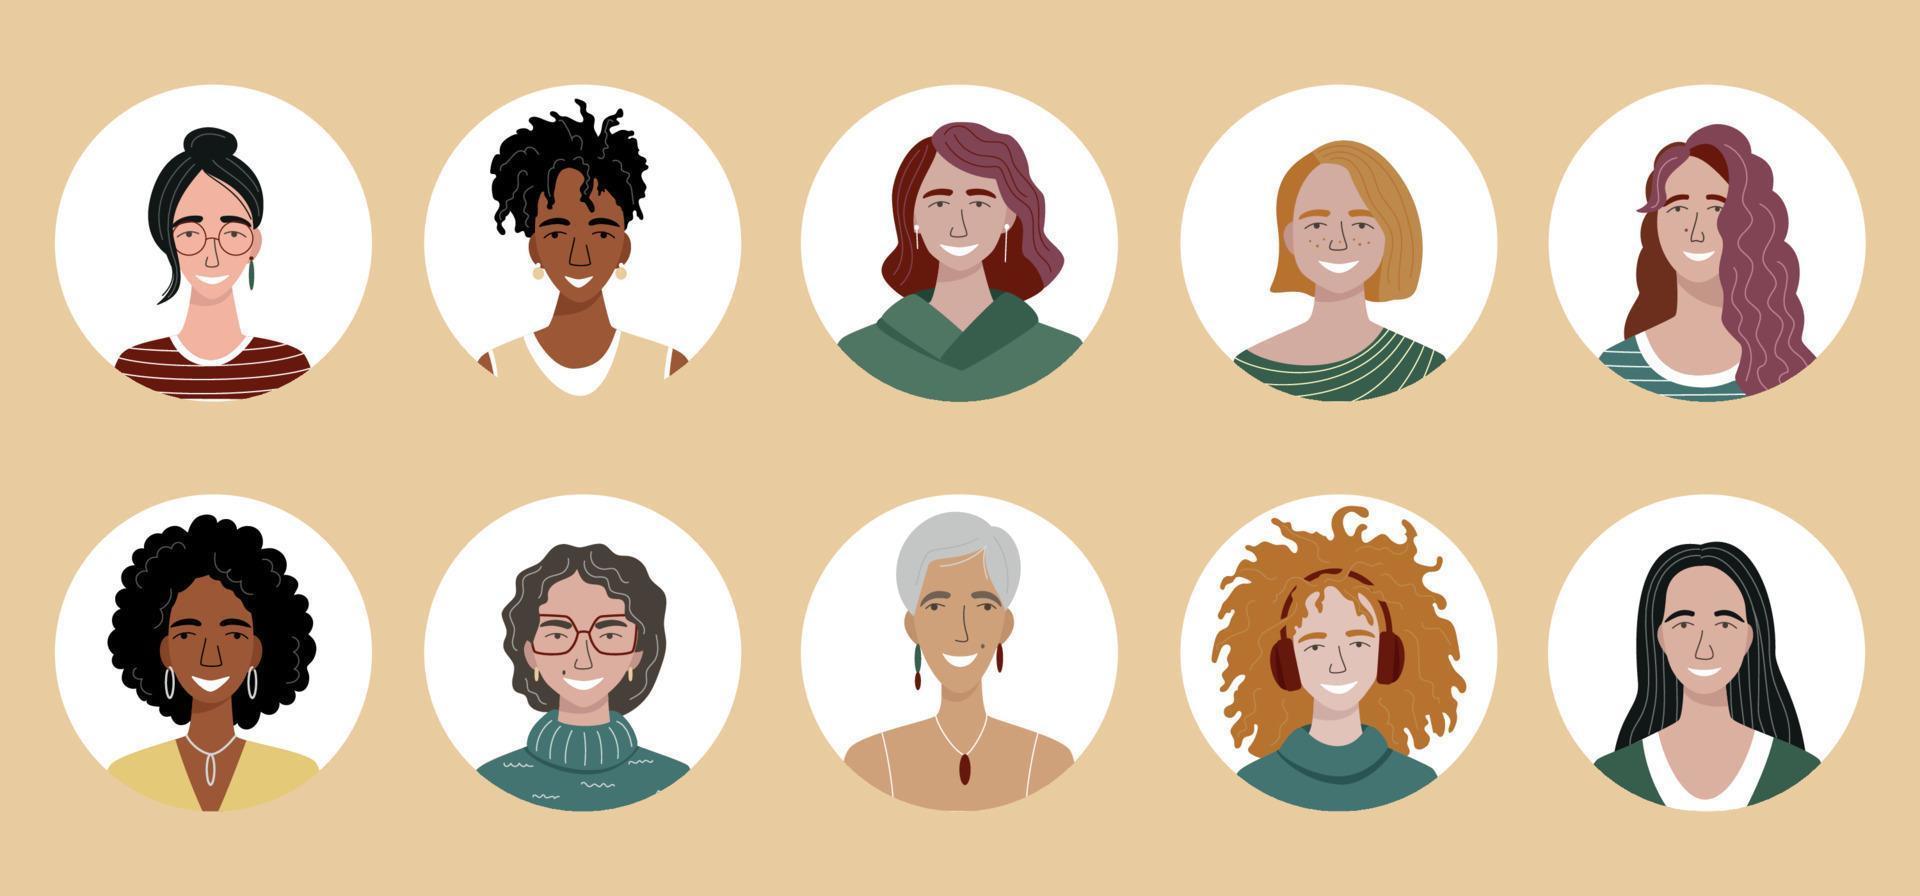 pacote de avatares de mulheres diferentes. conjunto de retratos de usuários coloridos. vetor